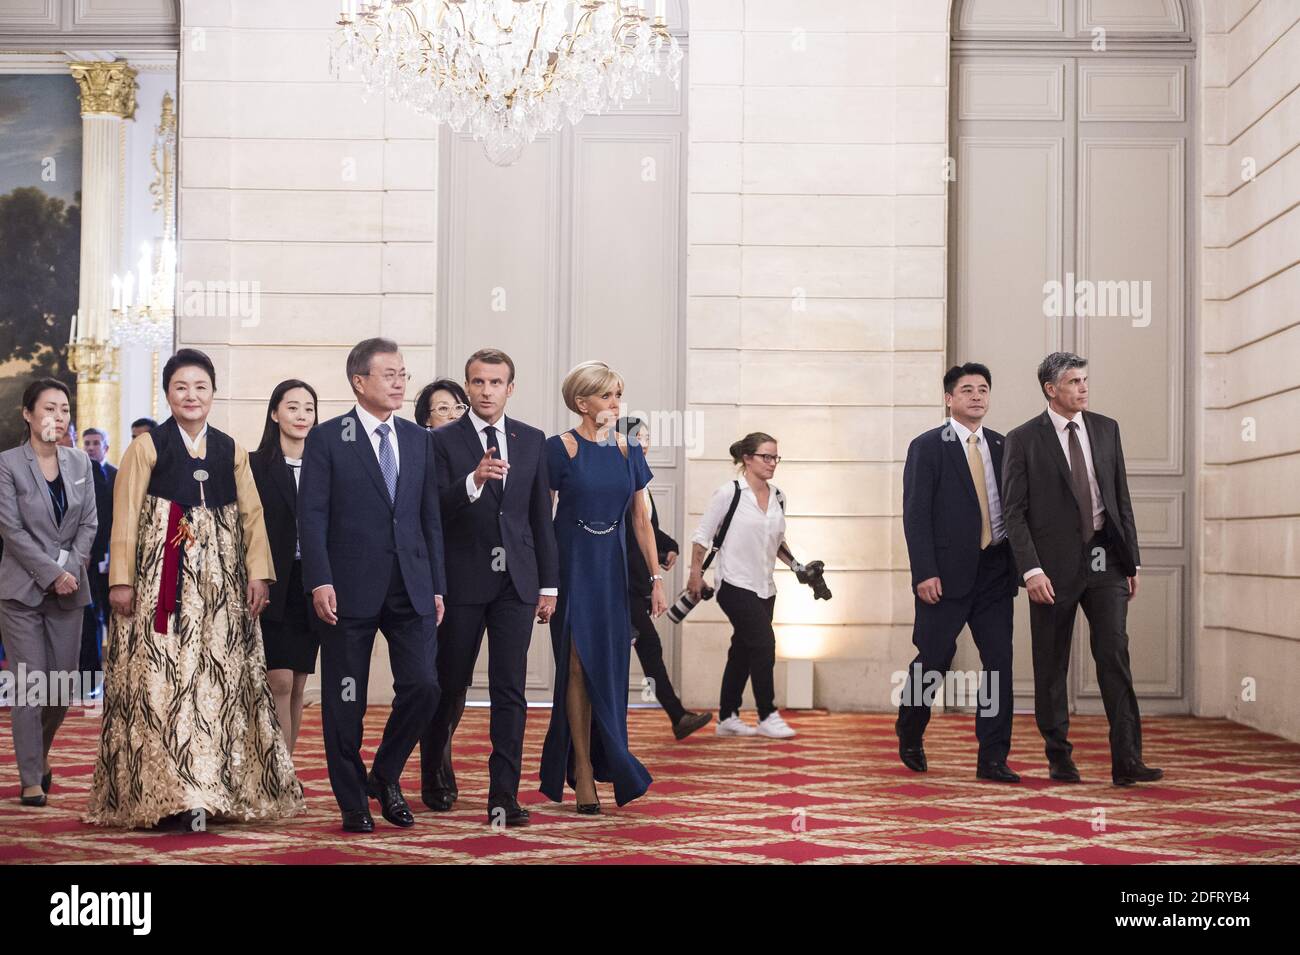 Il presidente francese Emmanuel Macron , sua moglie Brigitte Macron, il presidente sudcoreano Moon Jae-in e sua moglie Kim Jung-sook arrivano per una cena di stato al palazzo presidenziale Elysee a Parigi il 15 ottobre 2018. Foto di Eliot Blondt/ABACAPRESS.COM Foto Stock